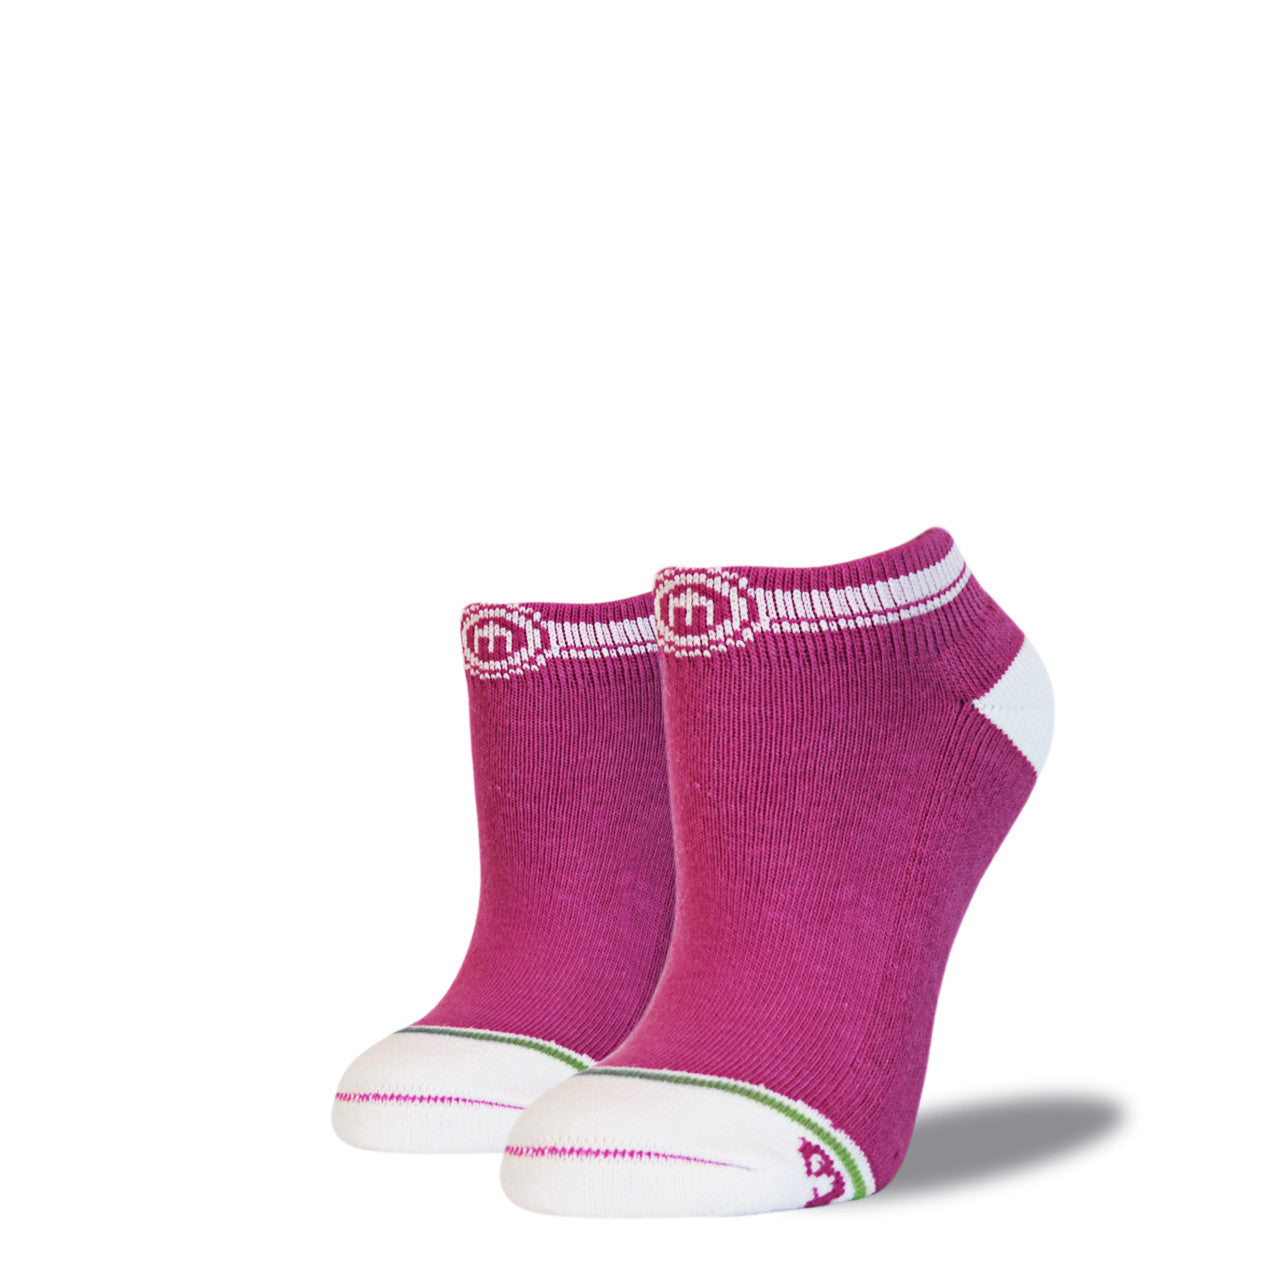 The Gabriela - Women's Pink Low Cut Socks